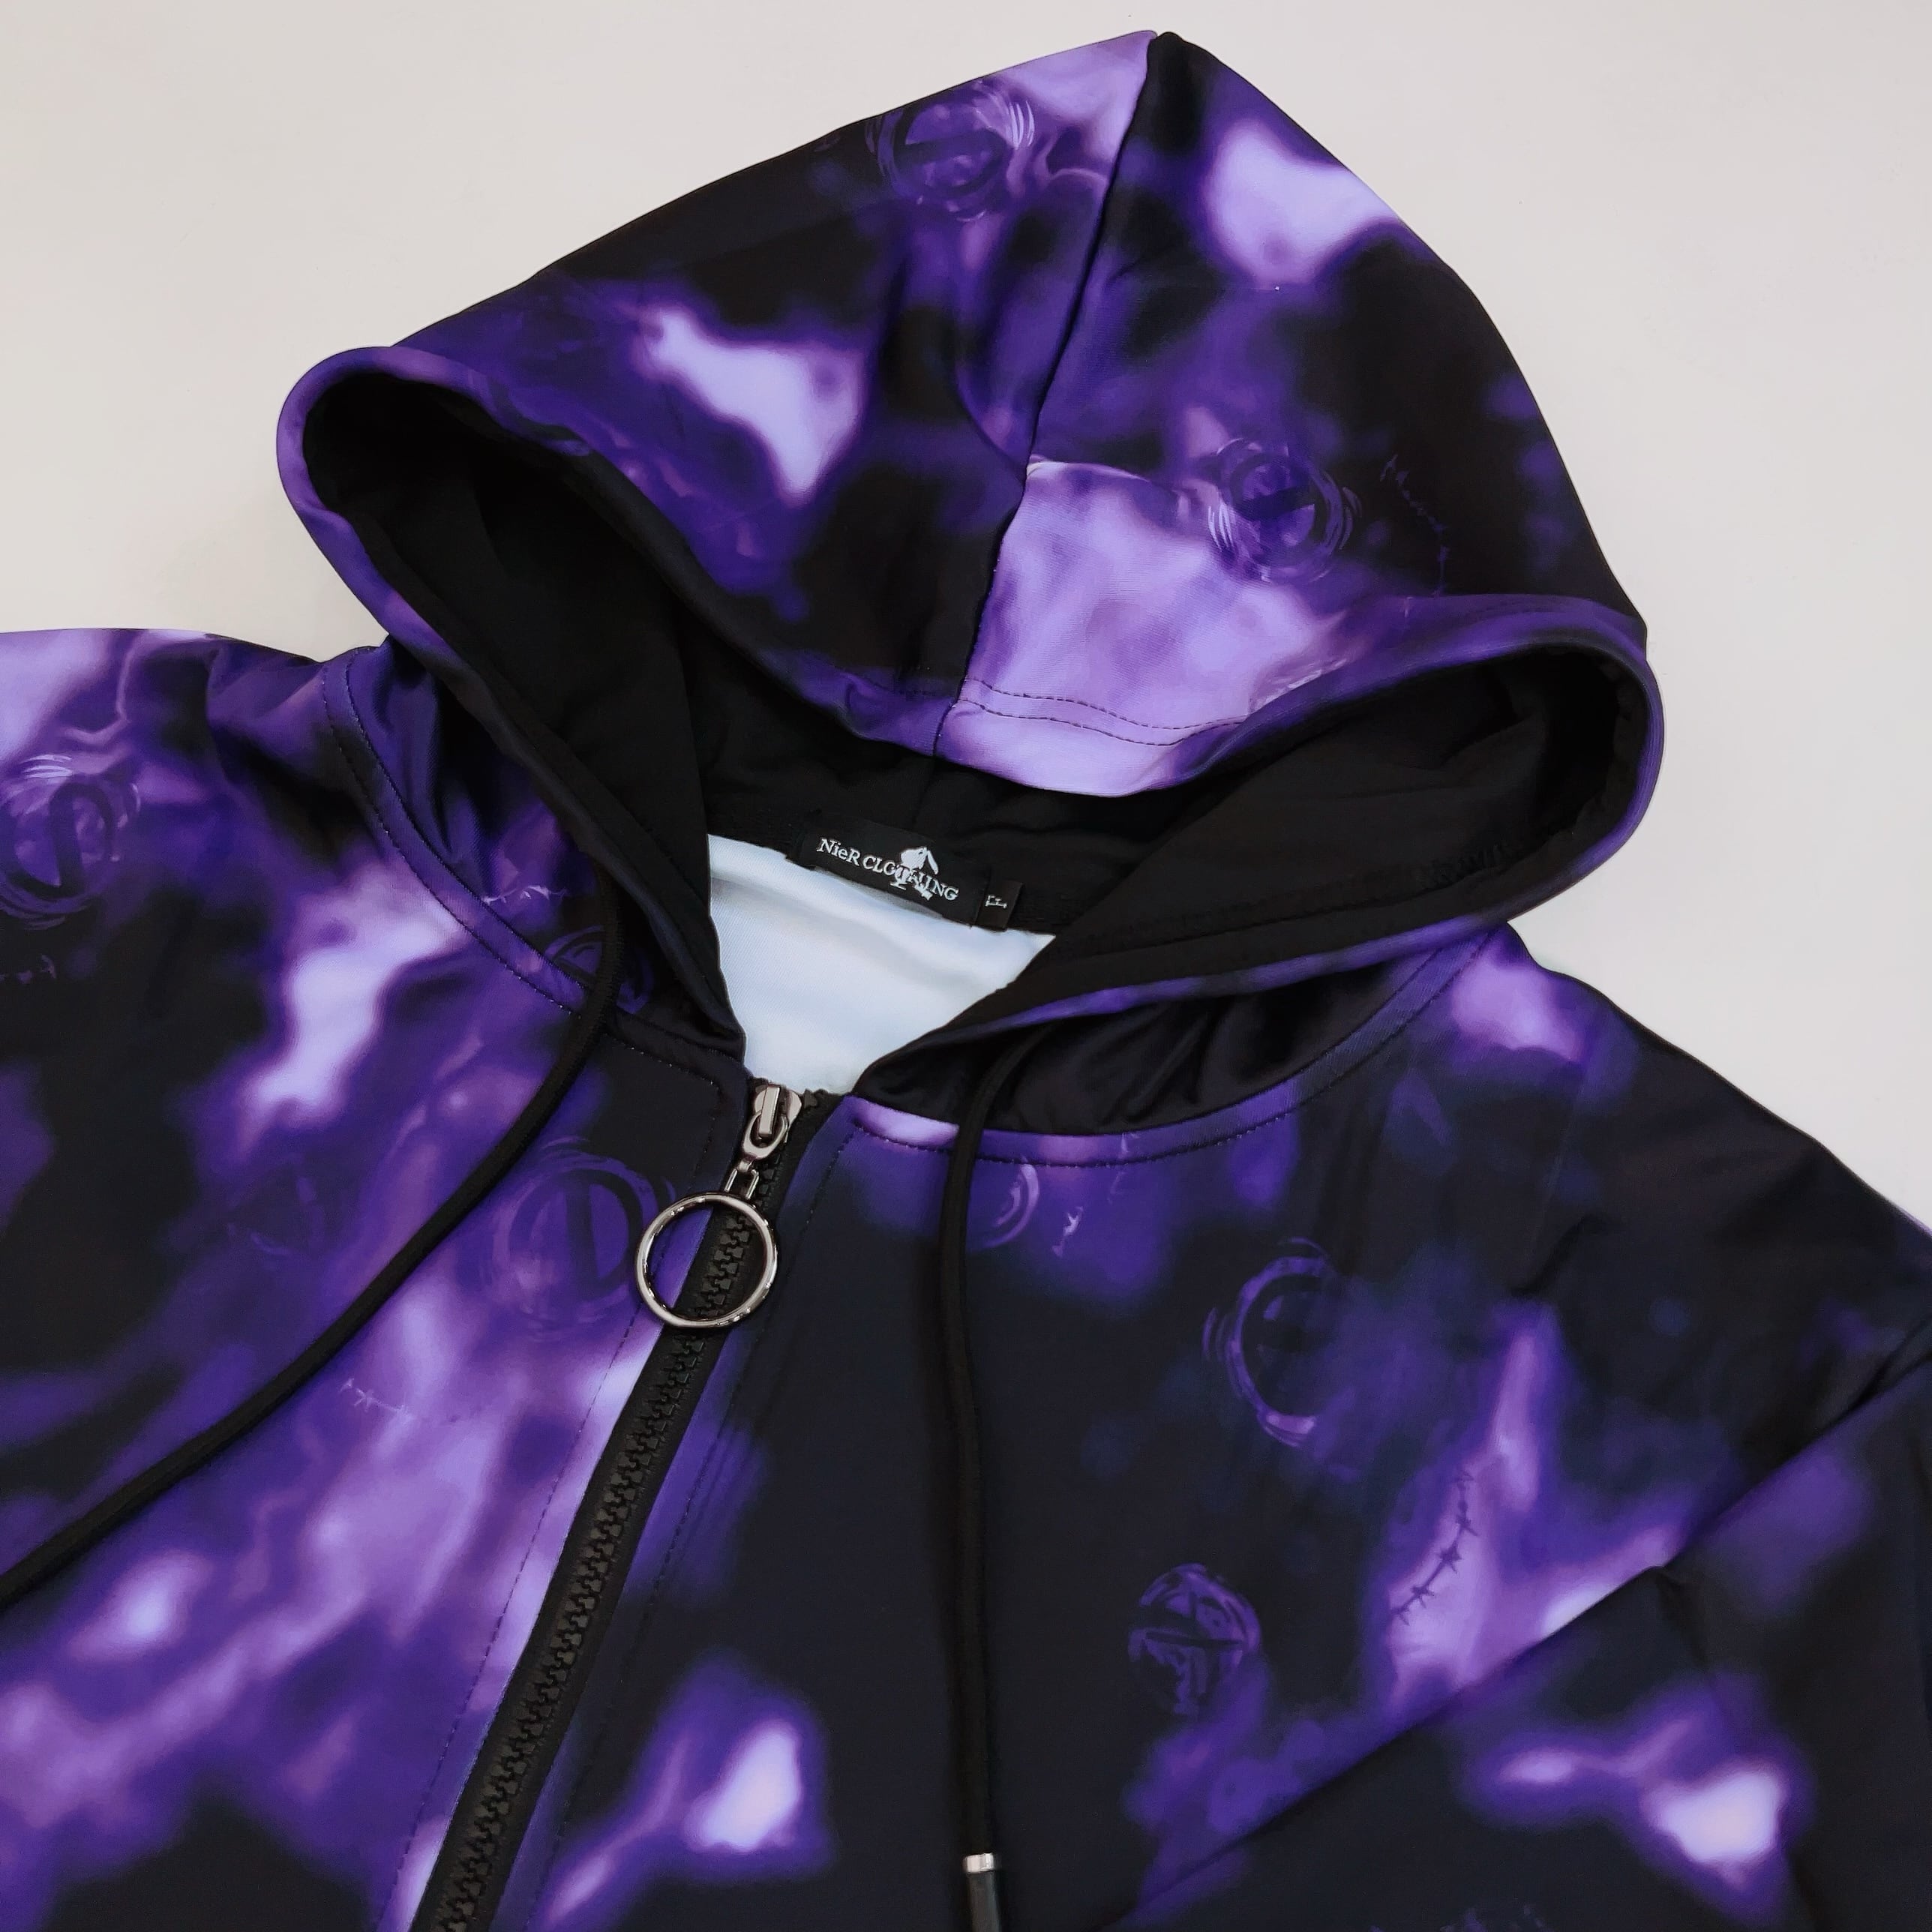 NieR purple apple fullzip hoodie